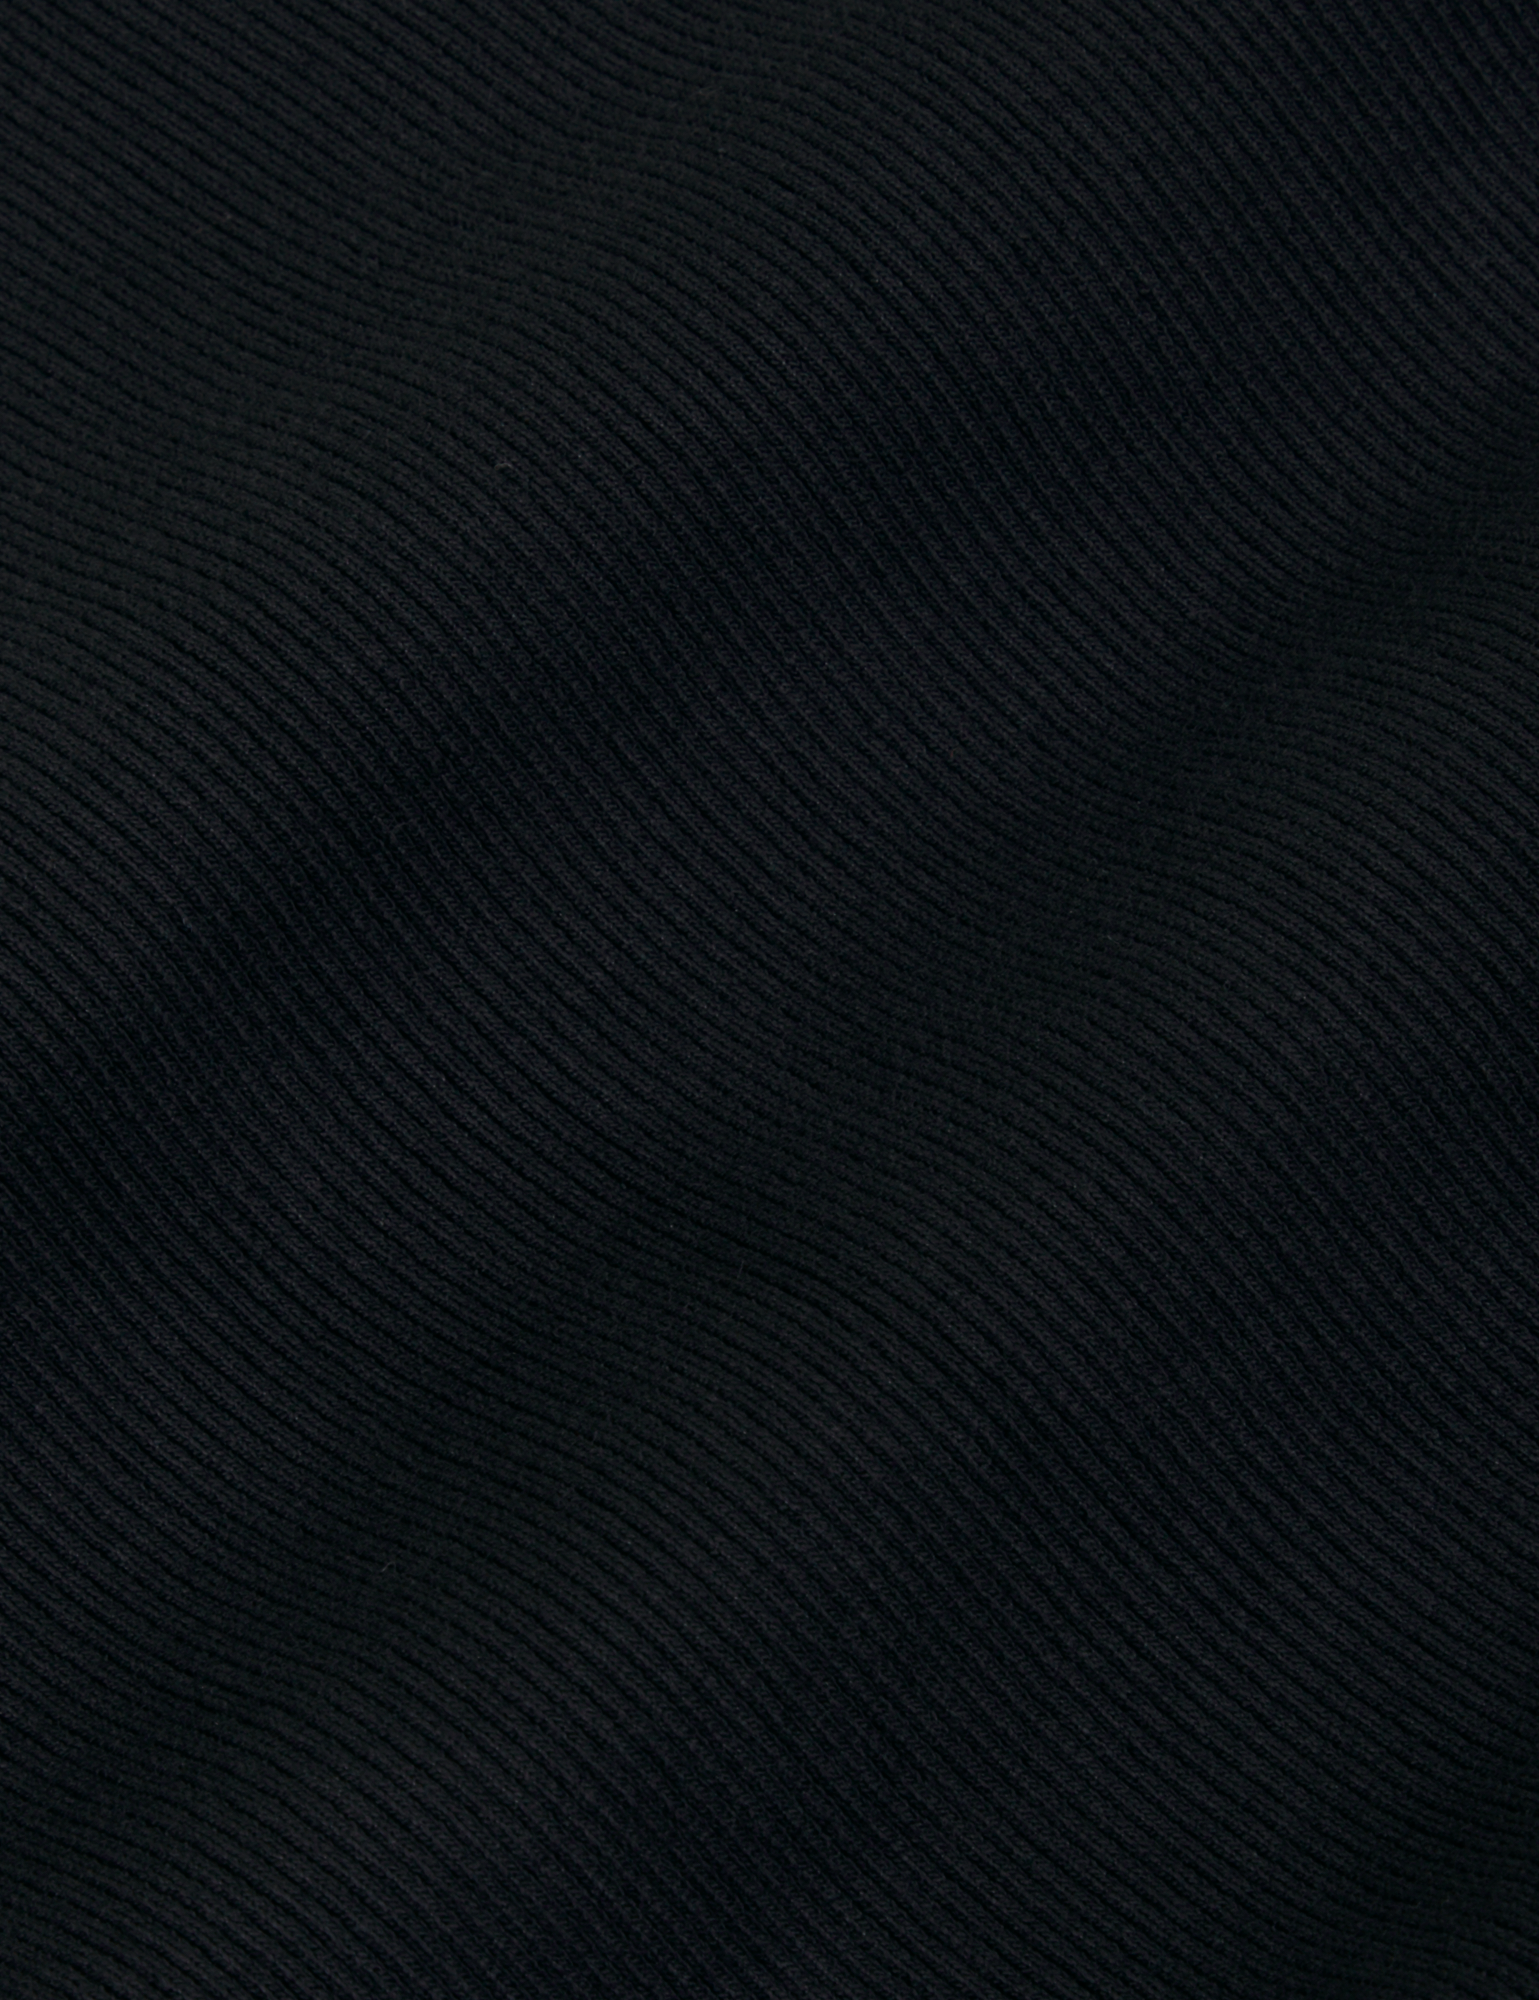 Long Sleeve V-Neck Tee in Basic Black fabric detail